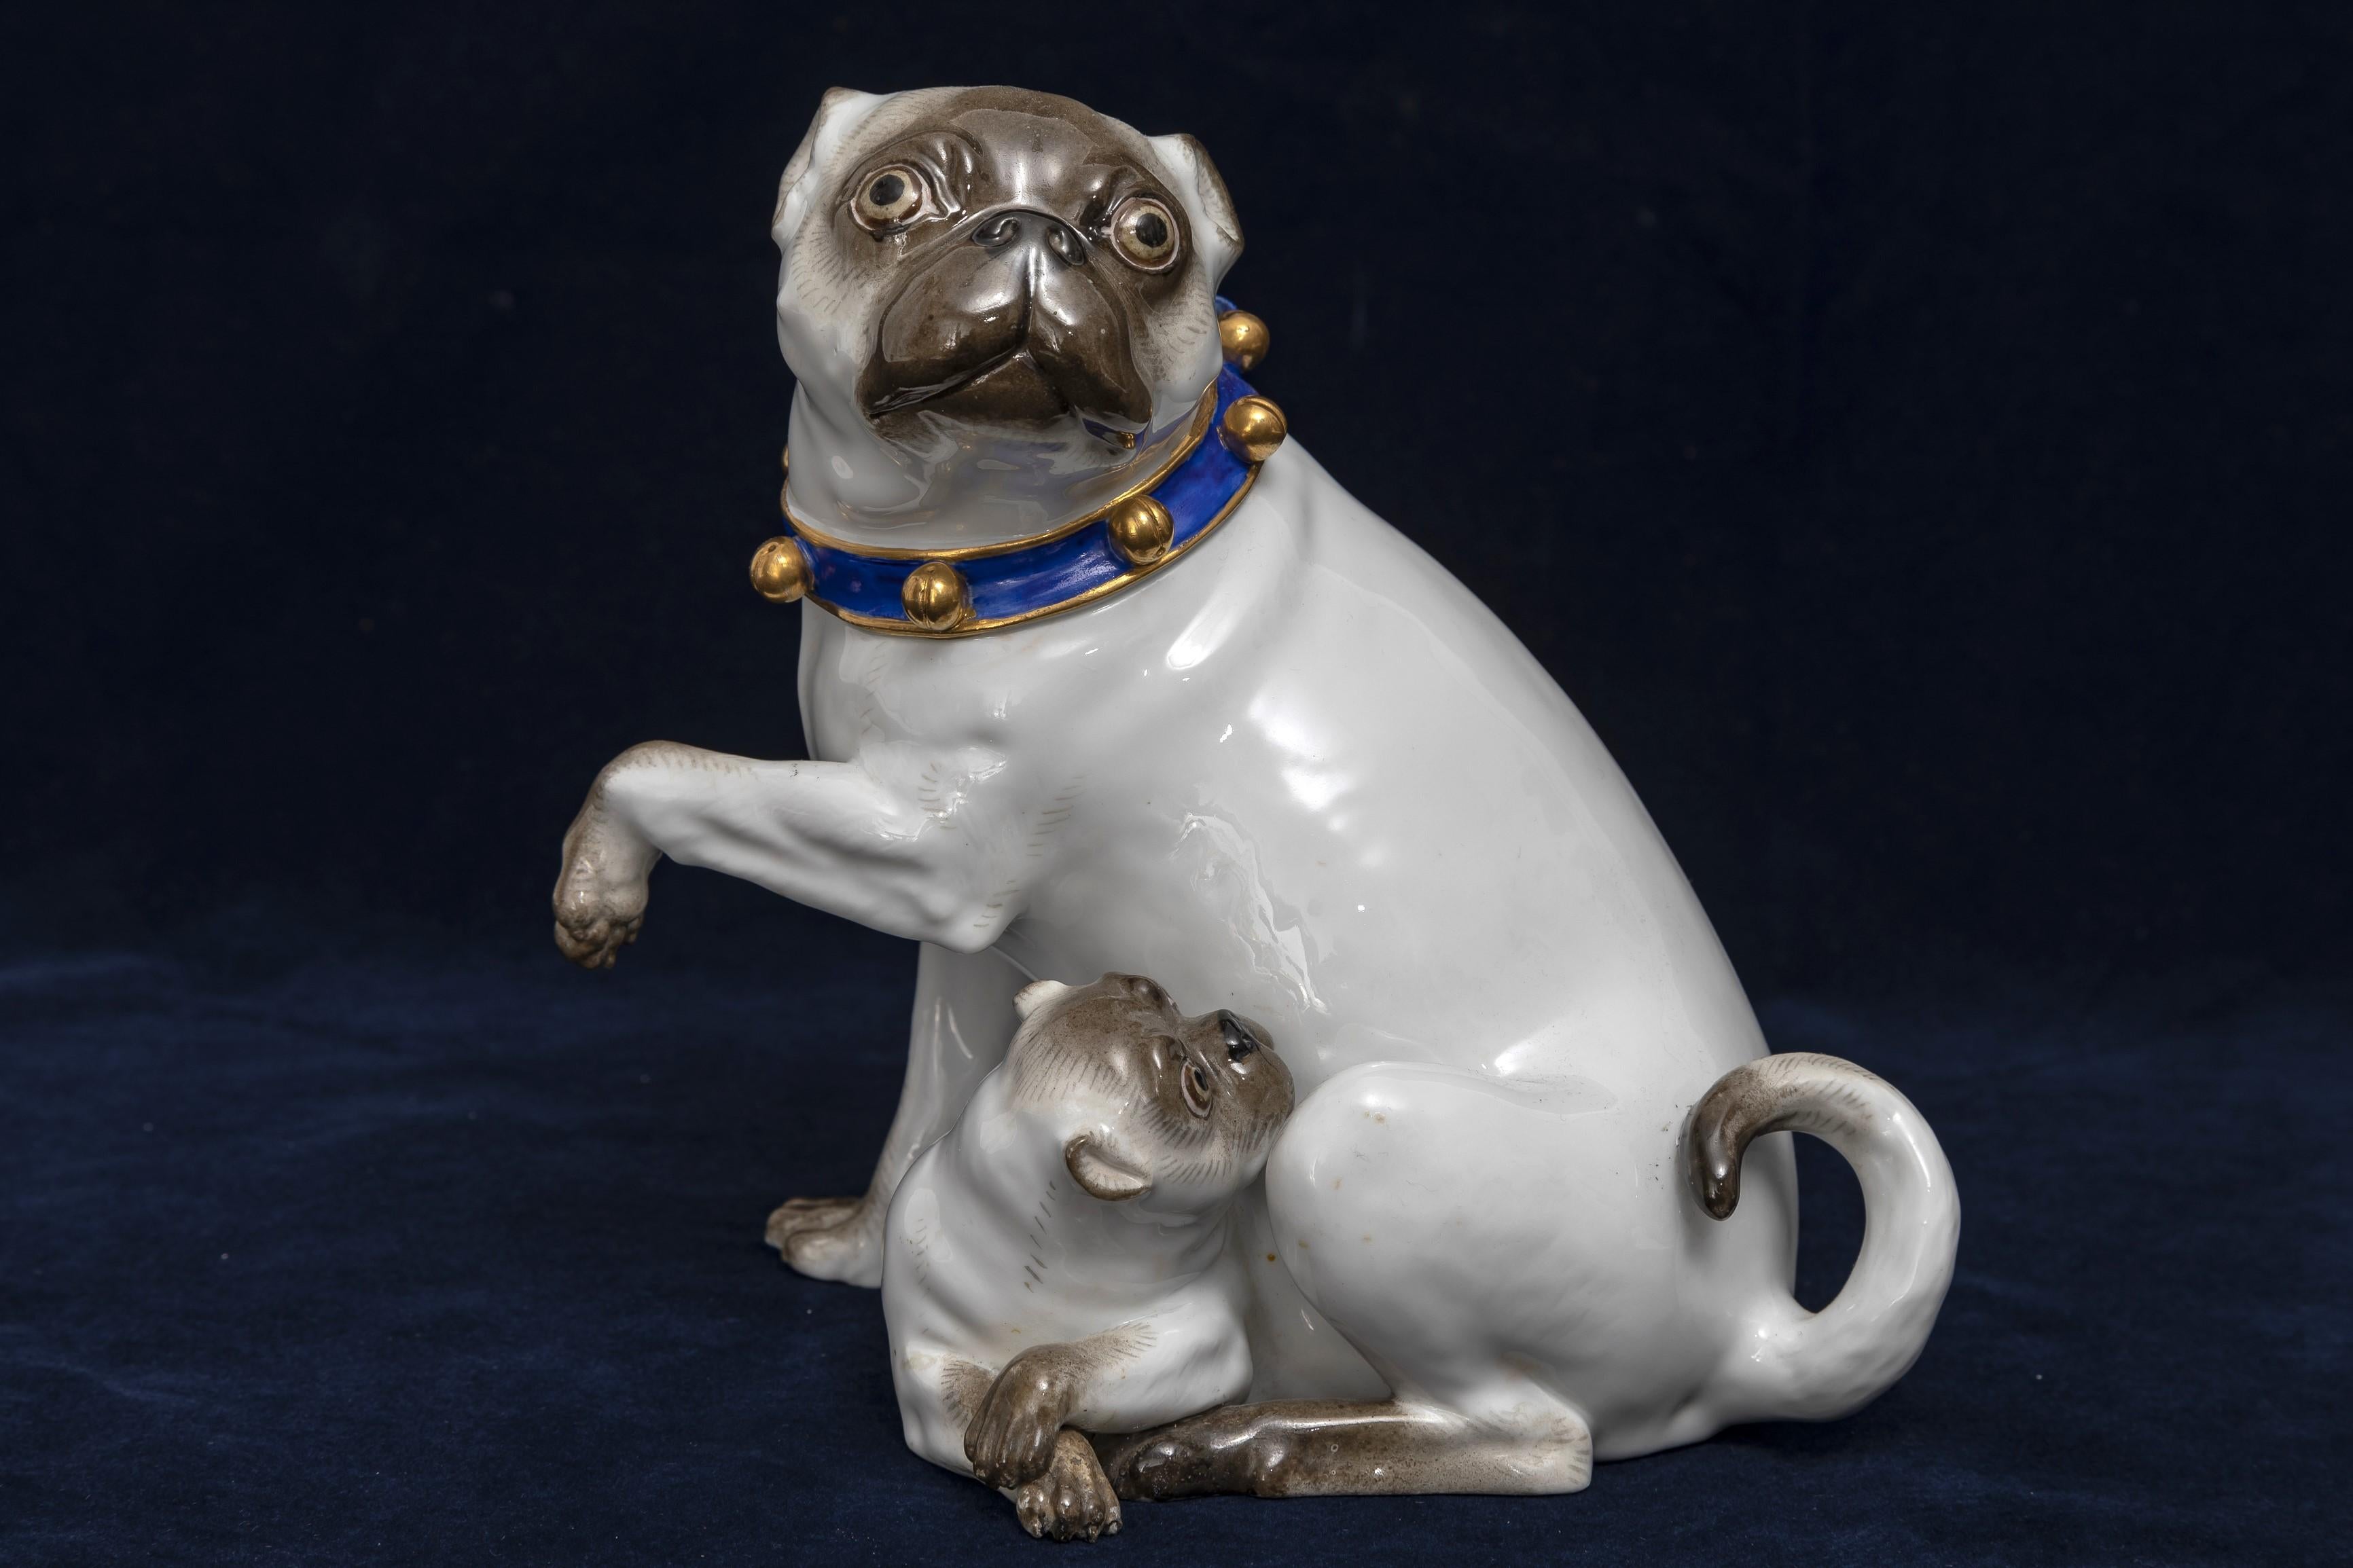 Grande figurine en porcelaine de Meissen du XIXe siècle représentant une mère carlin blanche et son enfant avec des clochettes dorées sur un collier bleu.  Ce grand modèle est très rare à trouver dans cette qualité, cet état et cette taille. Le